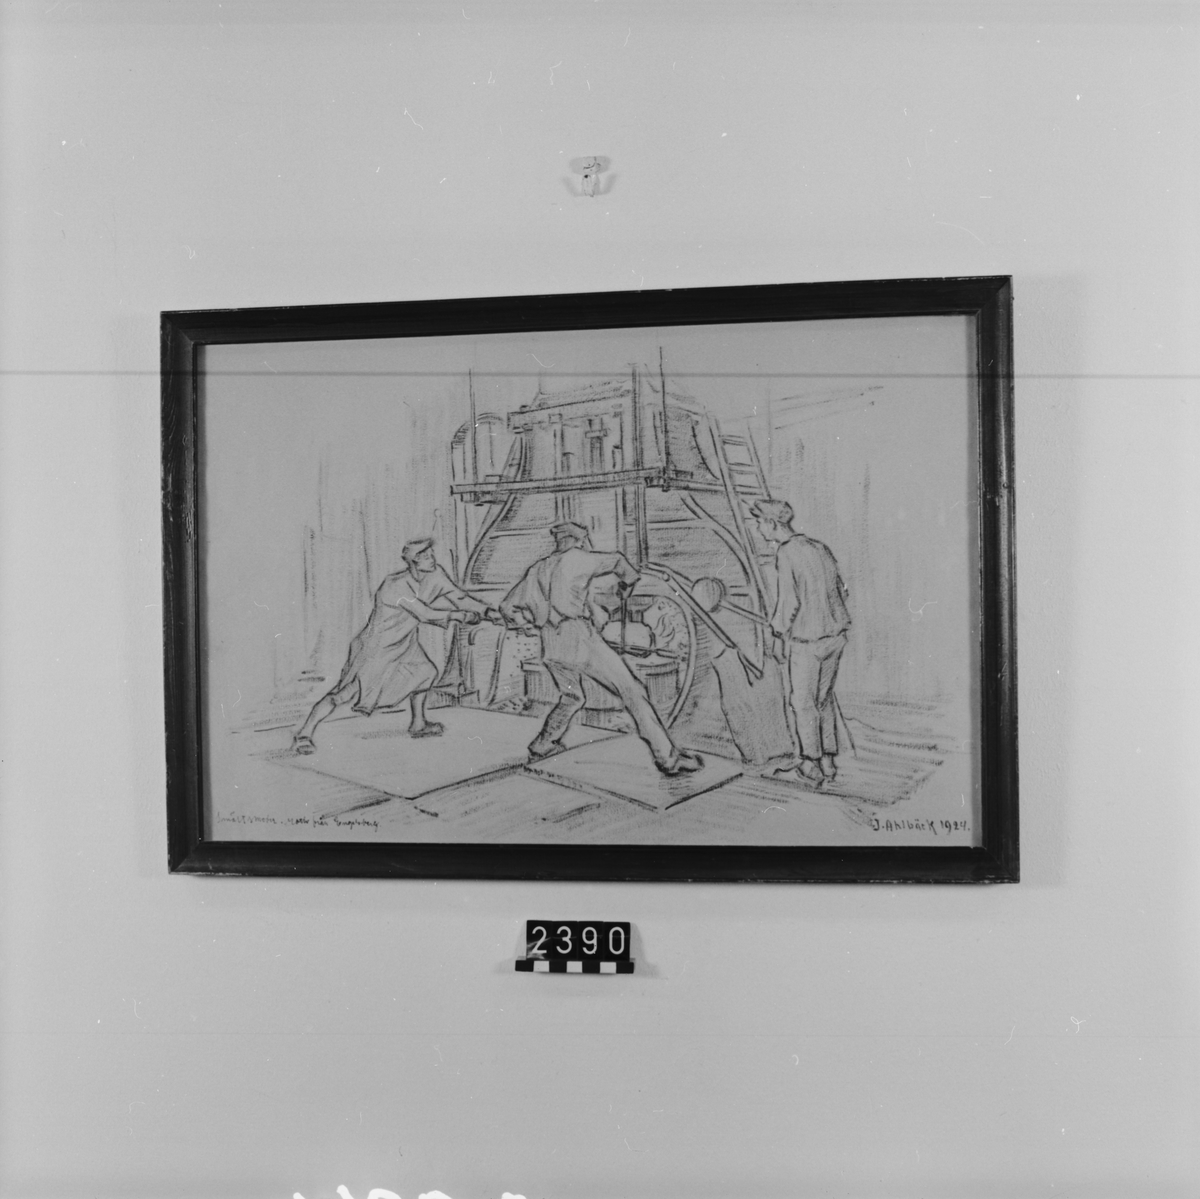 Teckning i blyerts och sepia, "Smältsmeder", motiv från Engelsberg. Interiör med tre arbetere.